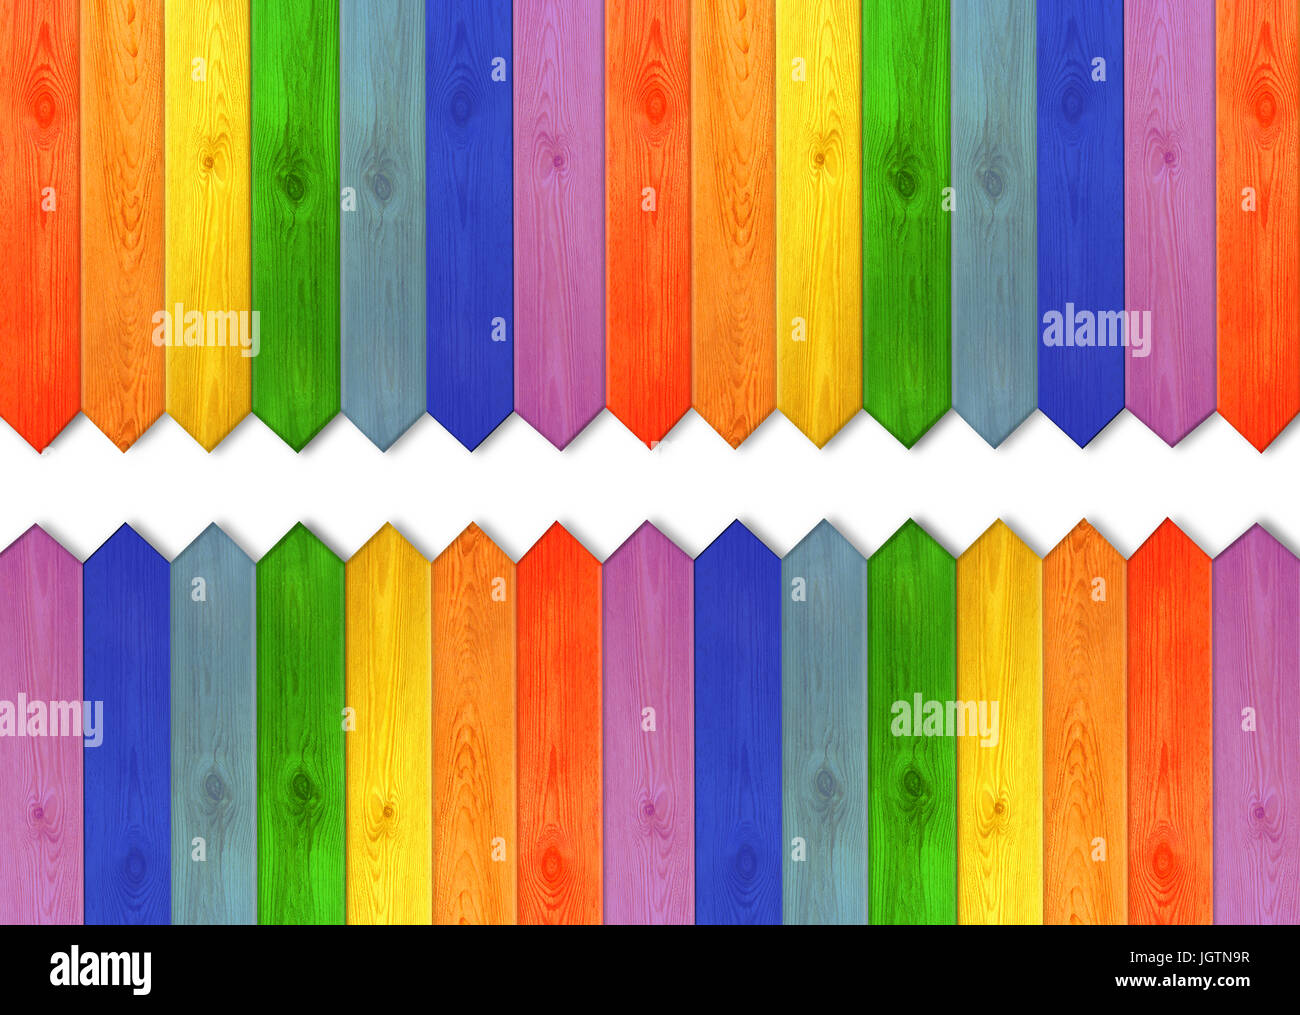 Variopinto di tavole di legno in colori dell'arcobaleno. Multicolore di recinzione di legno dai colori del arcobaleno con uno spazio bianco nel mezzo. Luogo vuoto per il testo Foto Stock